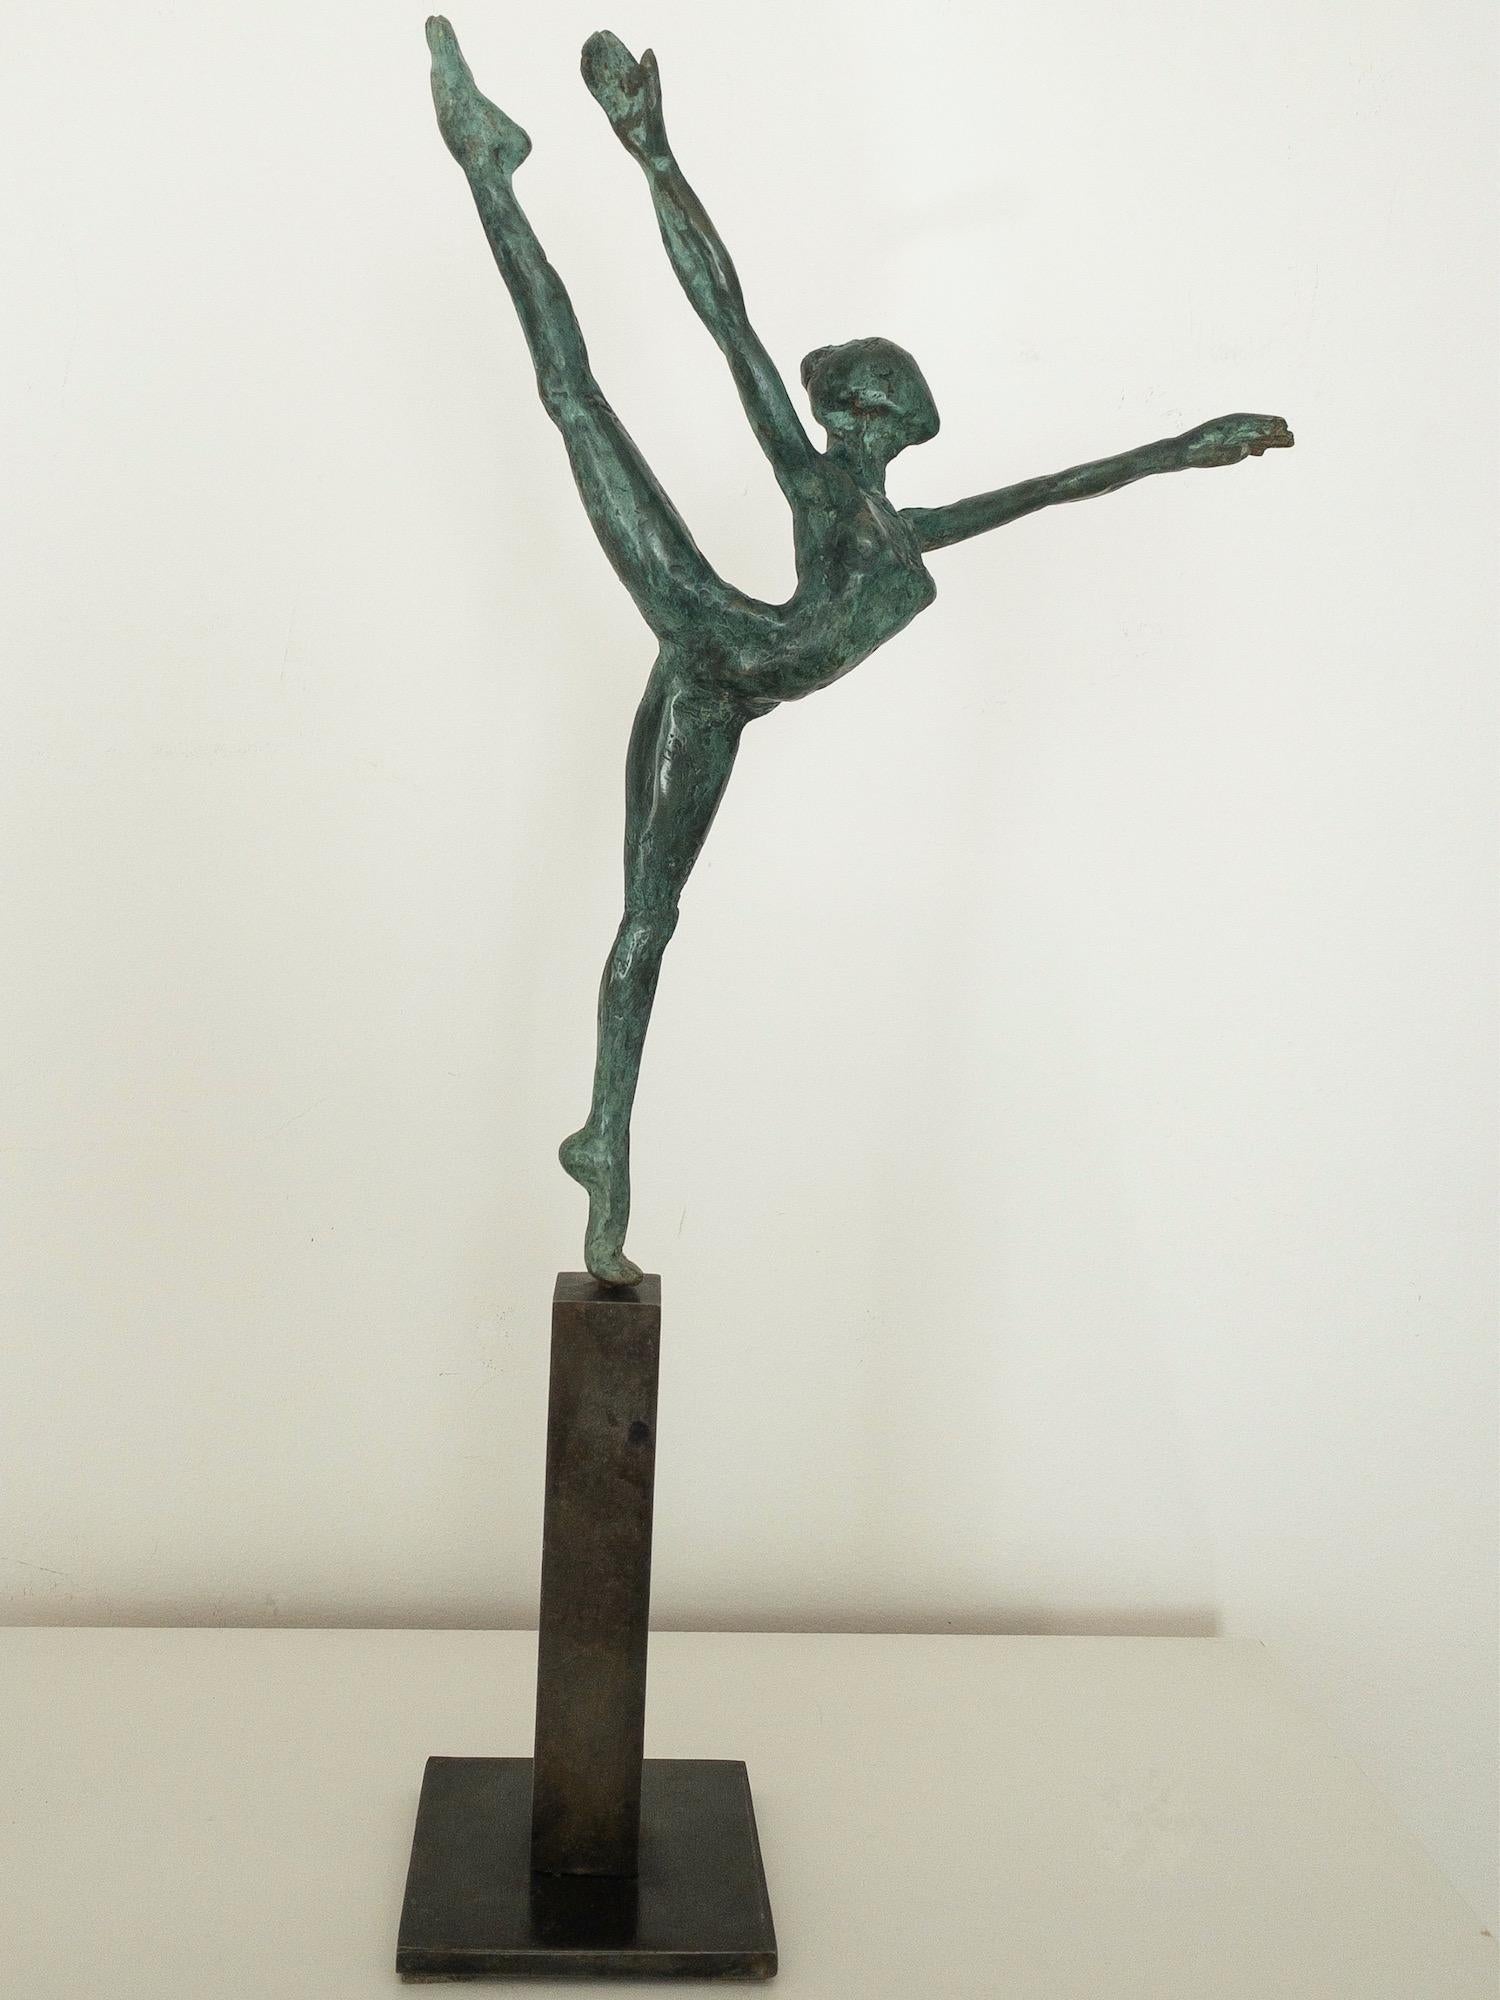 Danseuse "Elancée" II ist eine Bronzeskulptur des zeitgenössischen Künstlers Yann Guillon mit den Maßen 28 cm × 21 cm × 4 cm (11 × 8,3 × 1,6 in). Abmessungen des Metallsockels: 13 cm x 8 cm x 8 cm (5,1 x 3,1 x 3,1 Zoll). Höhe der Skulptur mit